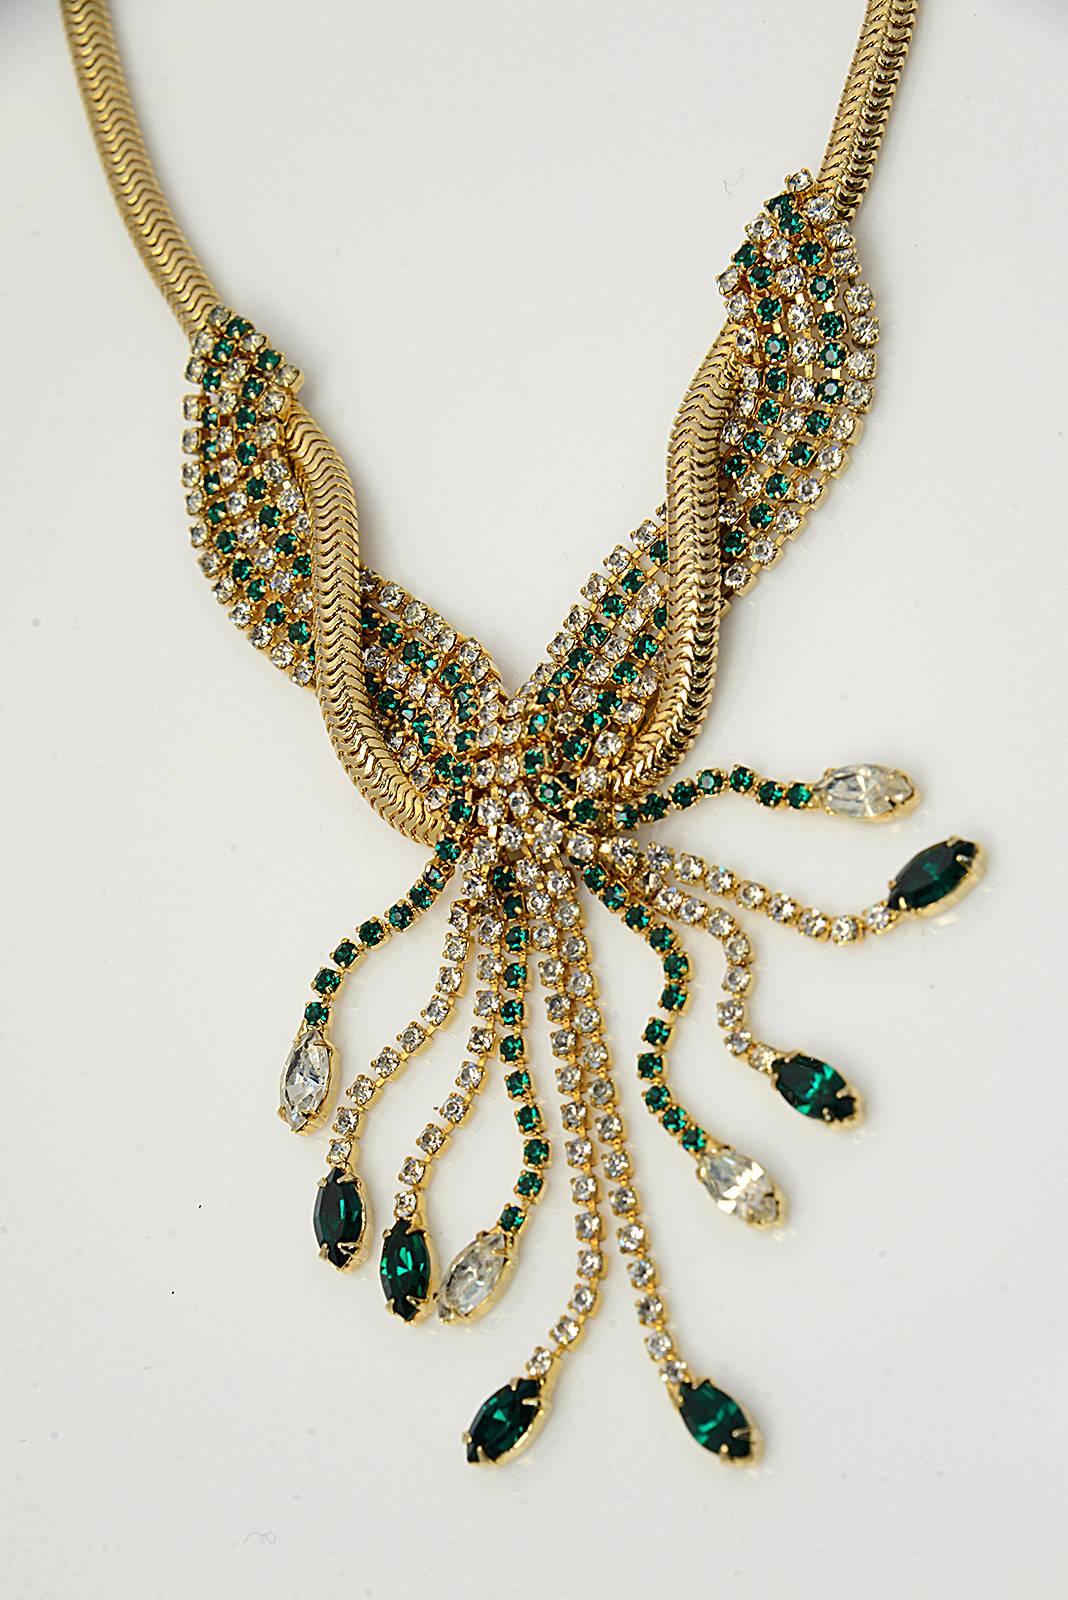 1940s jewelry